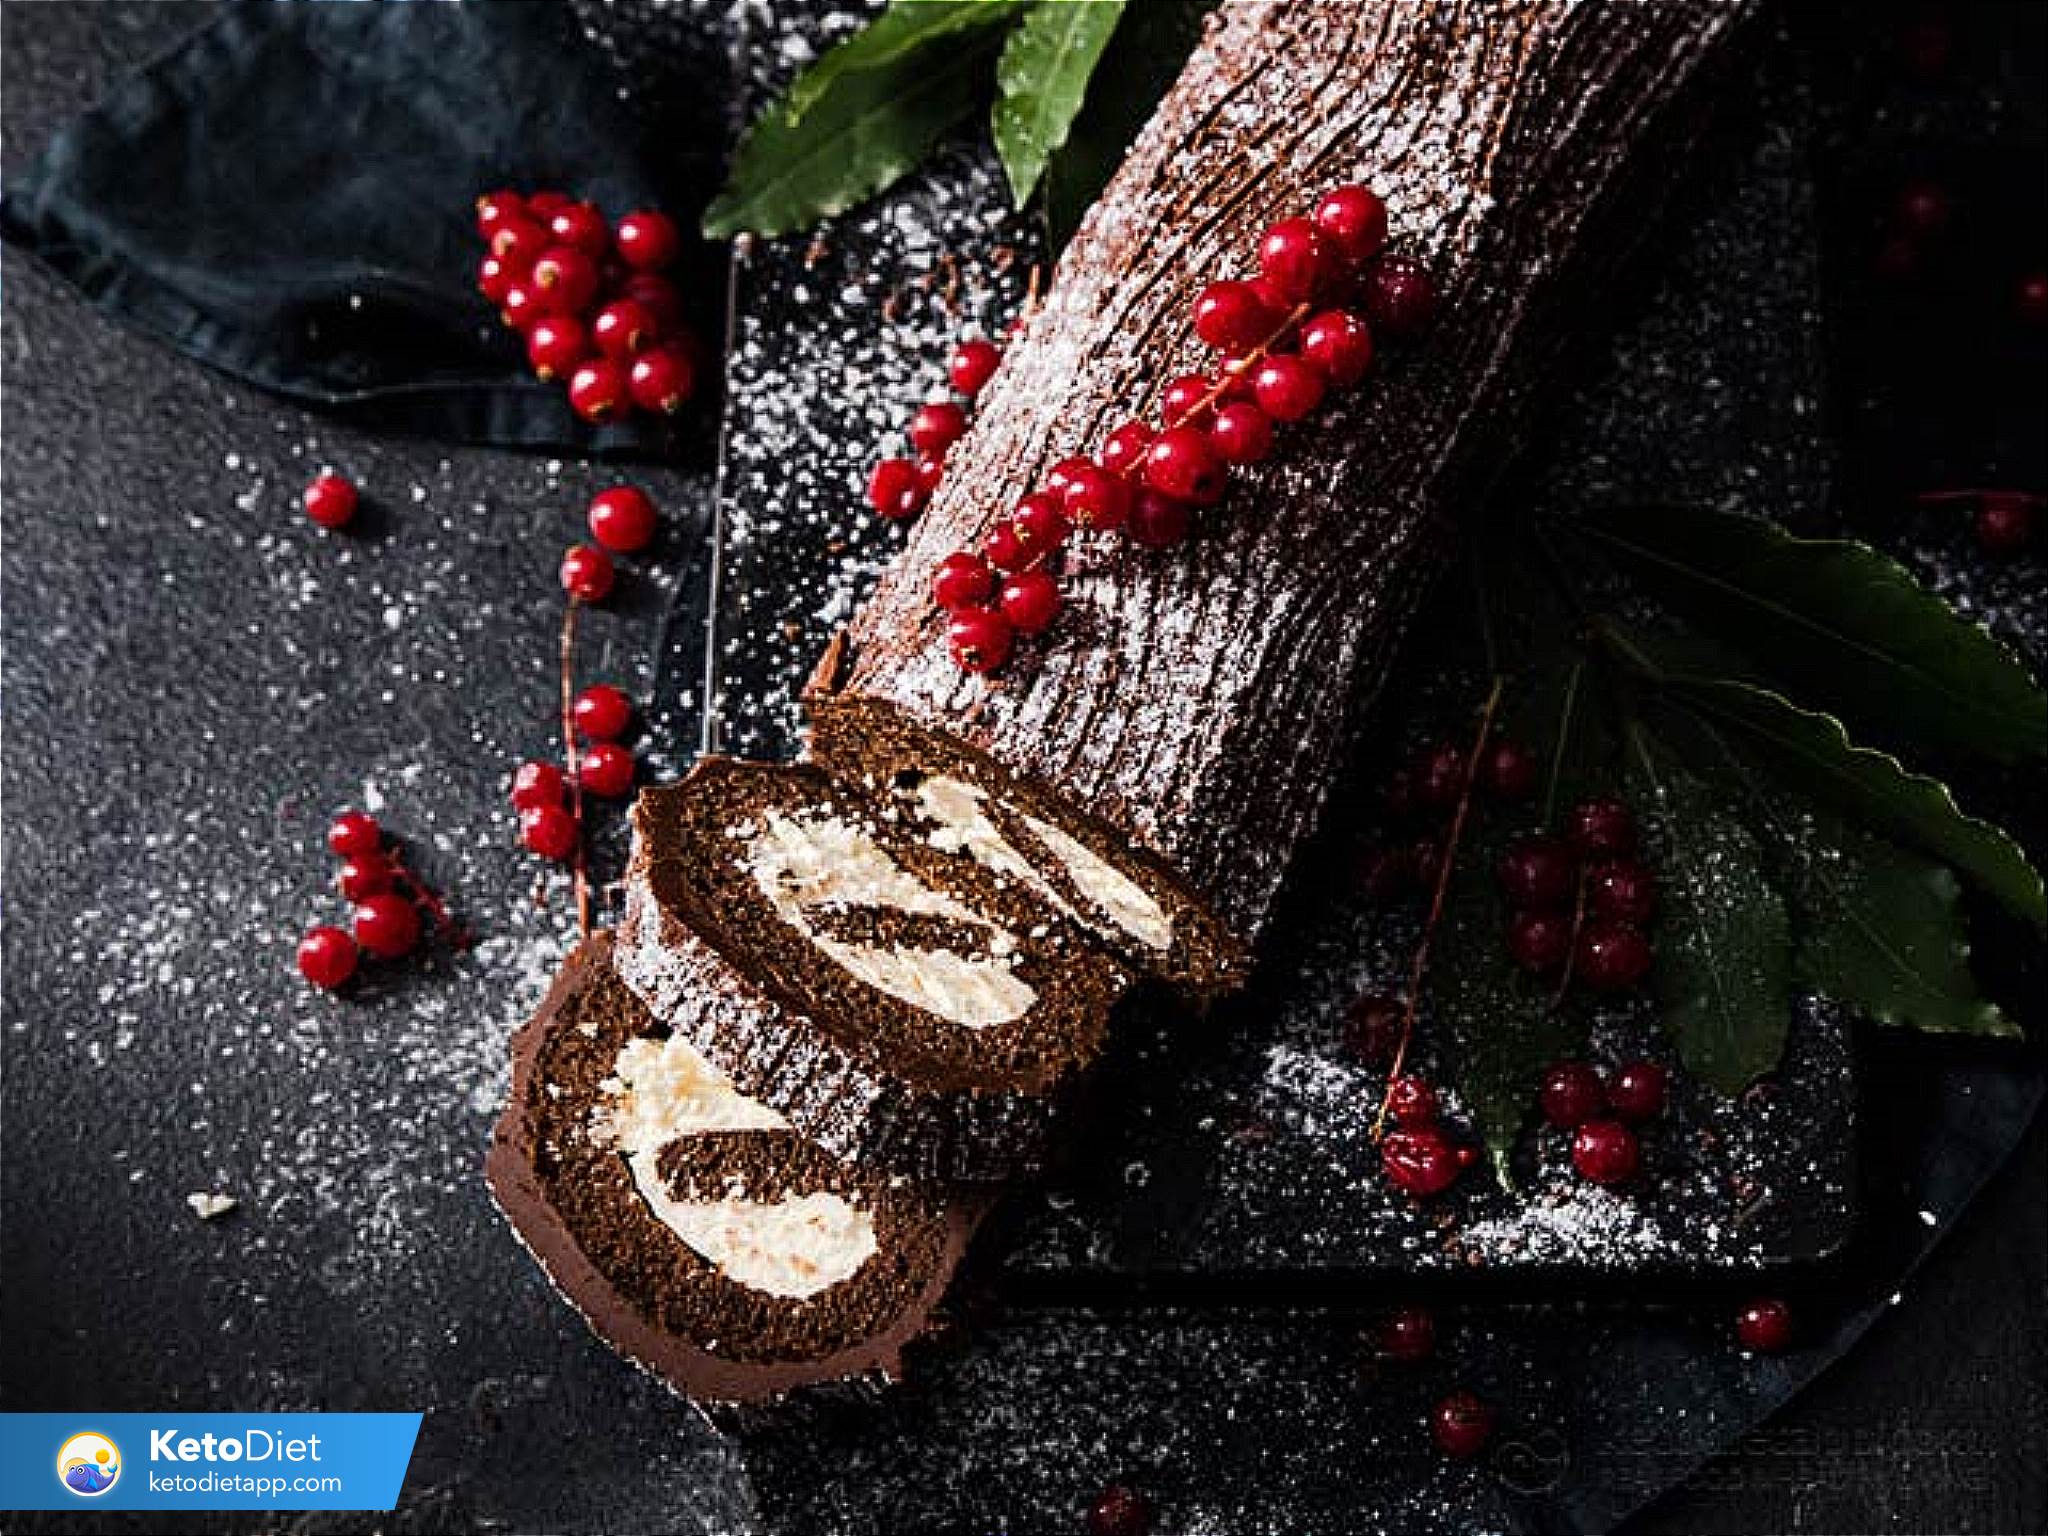 Bánh trung thu chocolate đặc biệt - Keto Buche De Noel | Blog KetoDiet là một bức hình vô cùng thú vị và hấp dẫn của những chiếc bánh trung thu cực kỳ độc đáo và khác lạ. Đầy hương vị của socola và chỉ chứa ít tinh bột, chắc chắn sẽ làm say đắm trái tim của những người thưởng thức bánh trung thu.